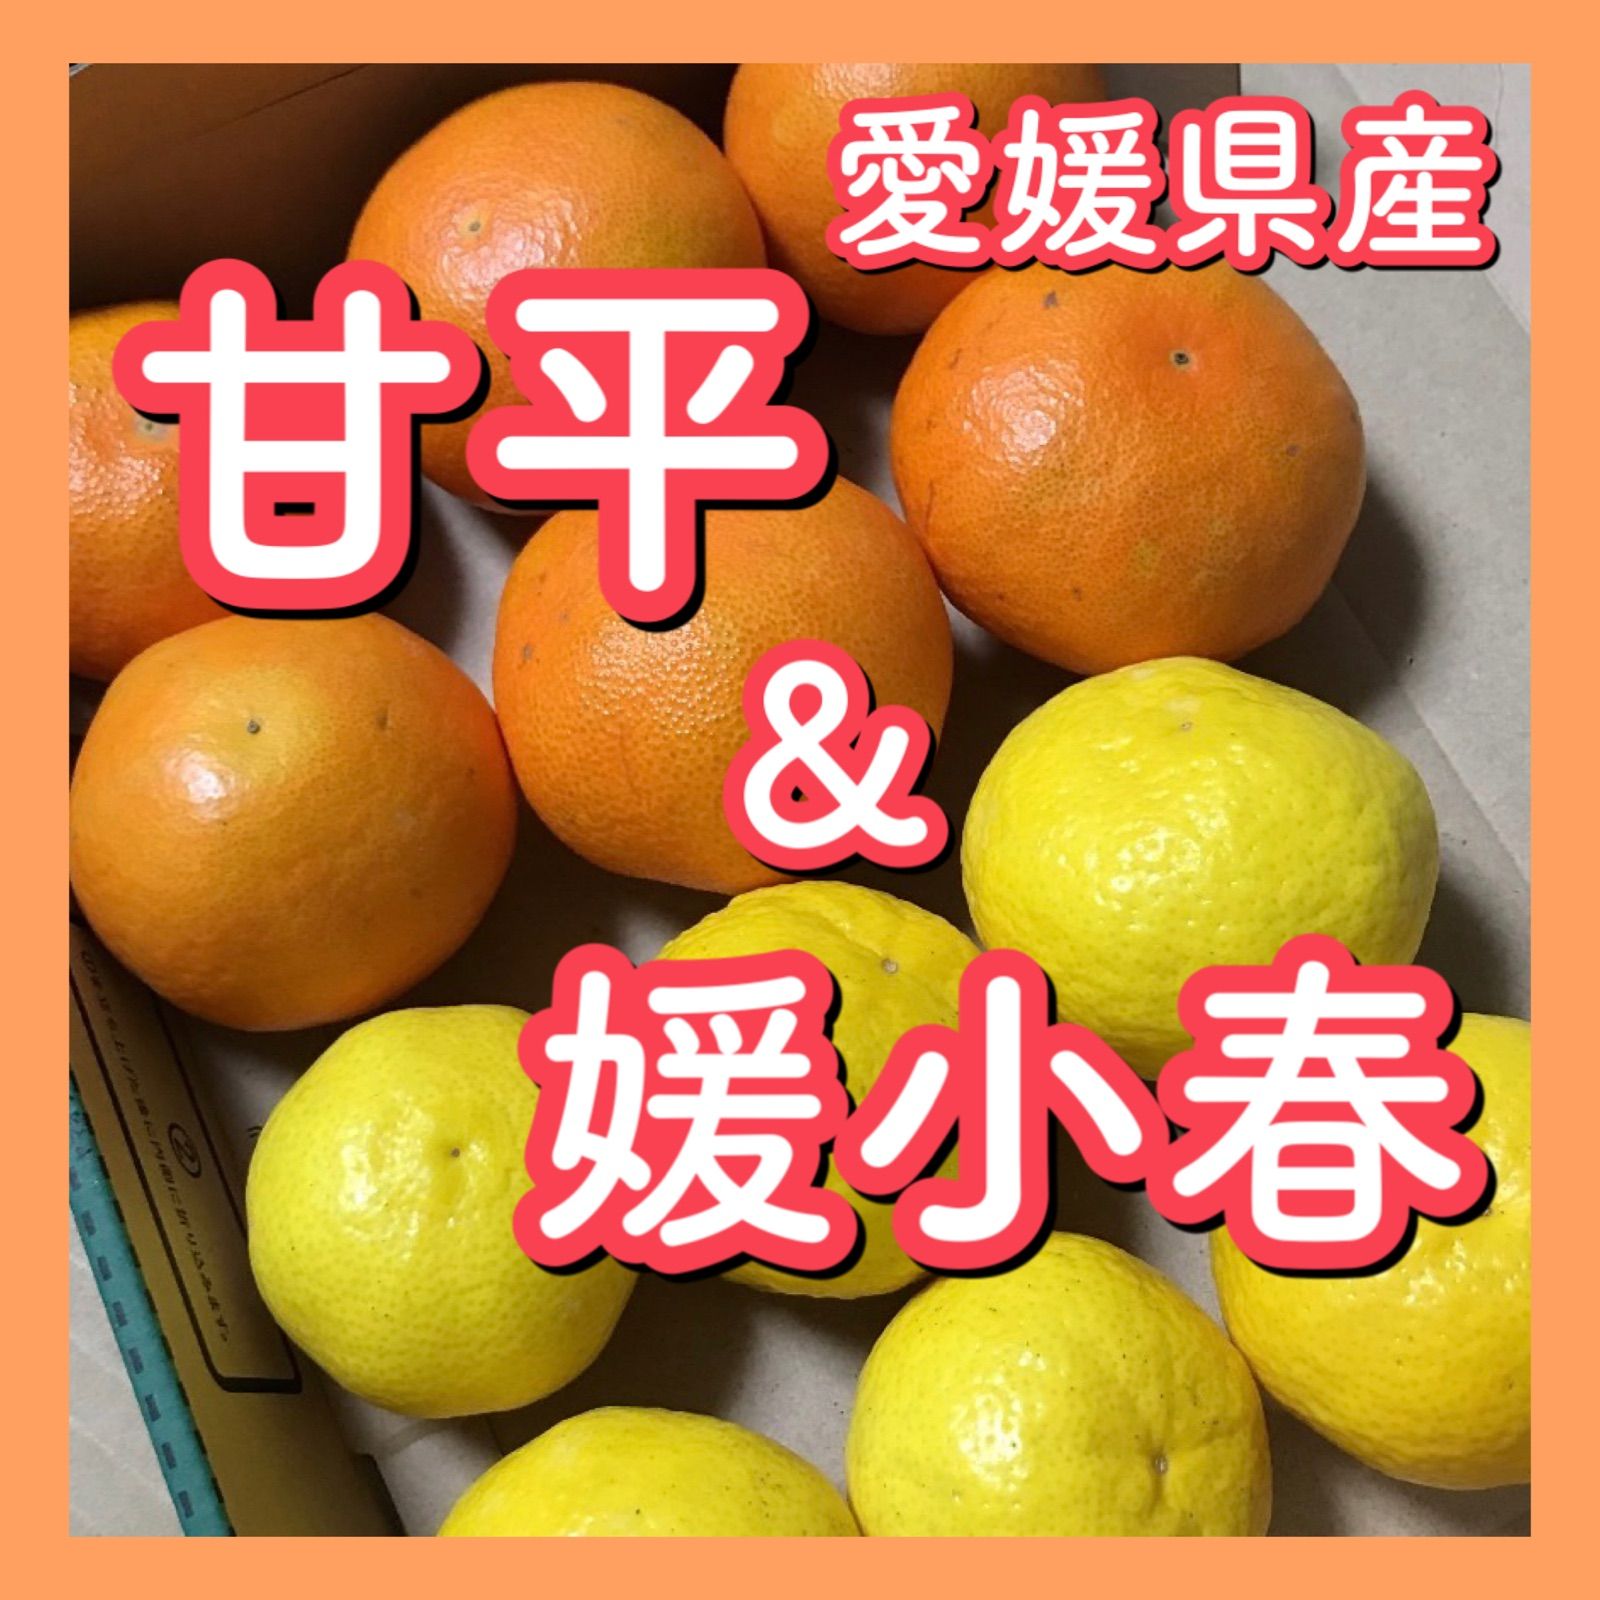 愛媛県産甘平6個&媛小春6個セット 柑橘 みかん 果物 フルーツ